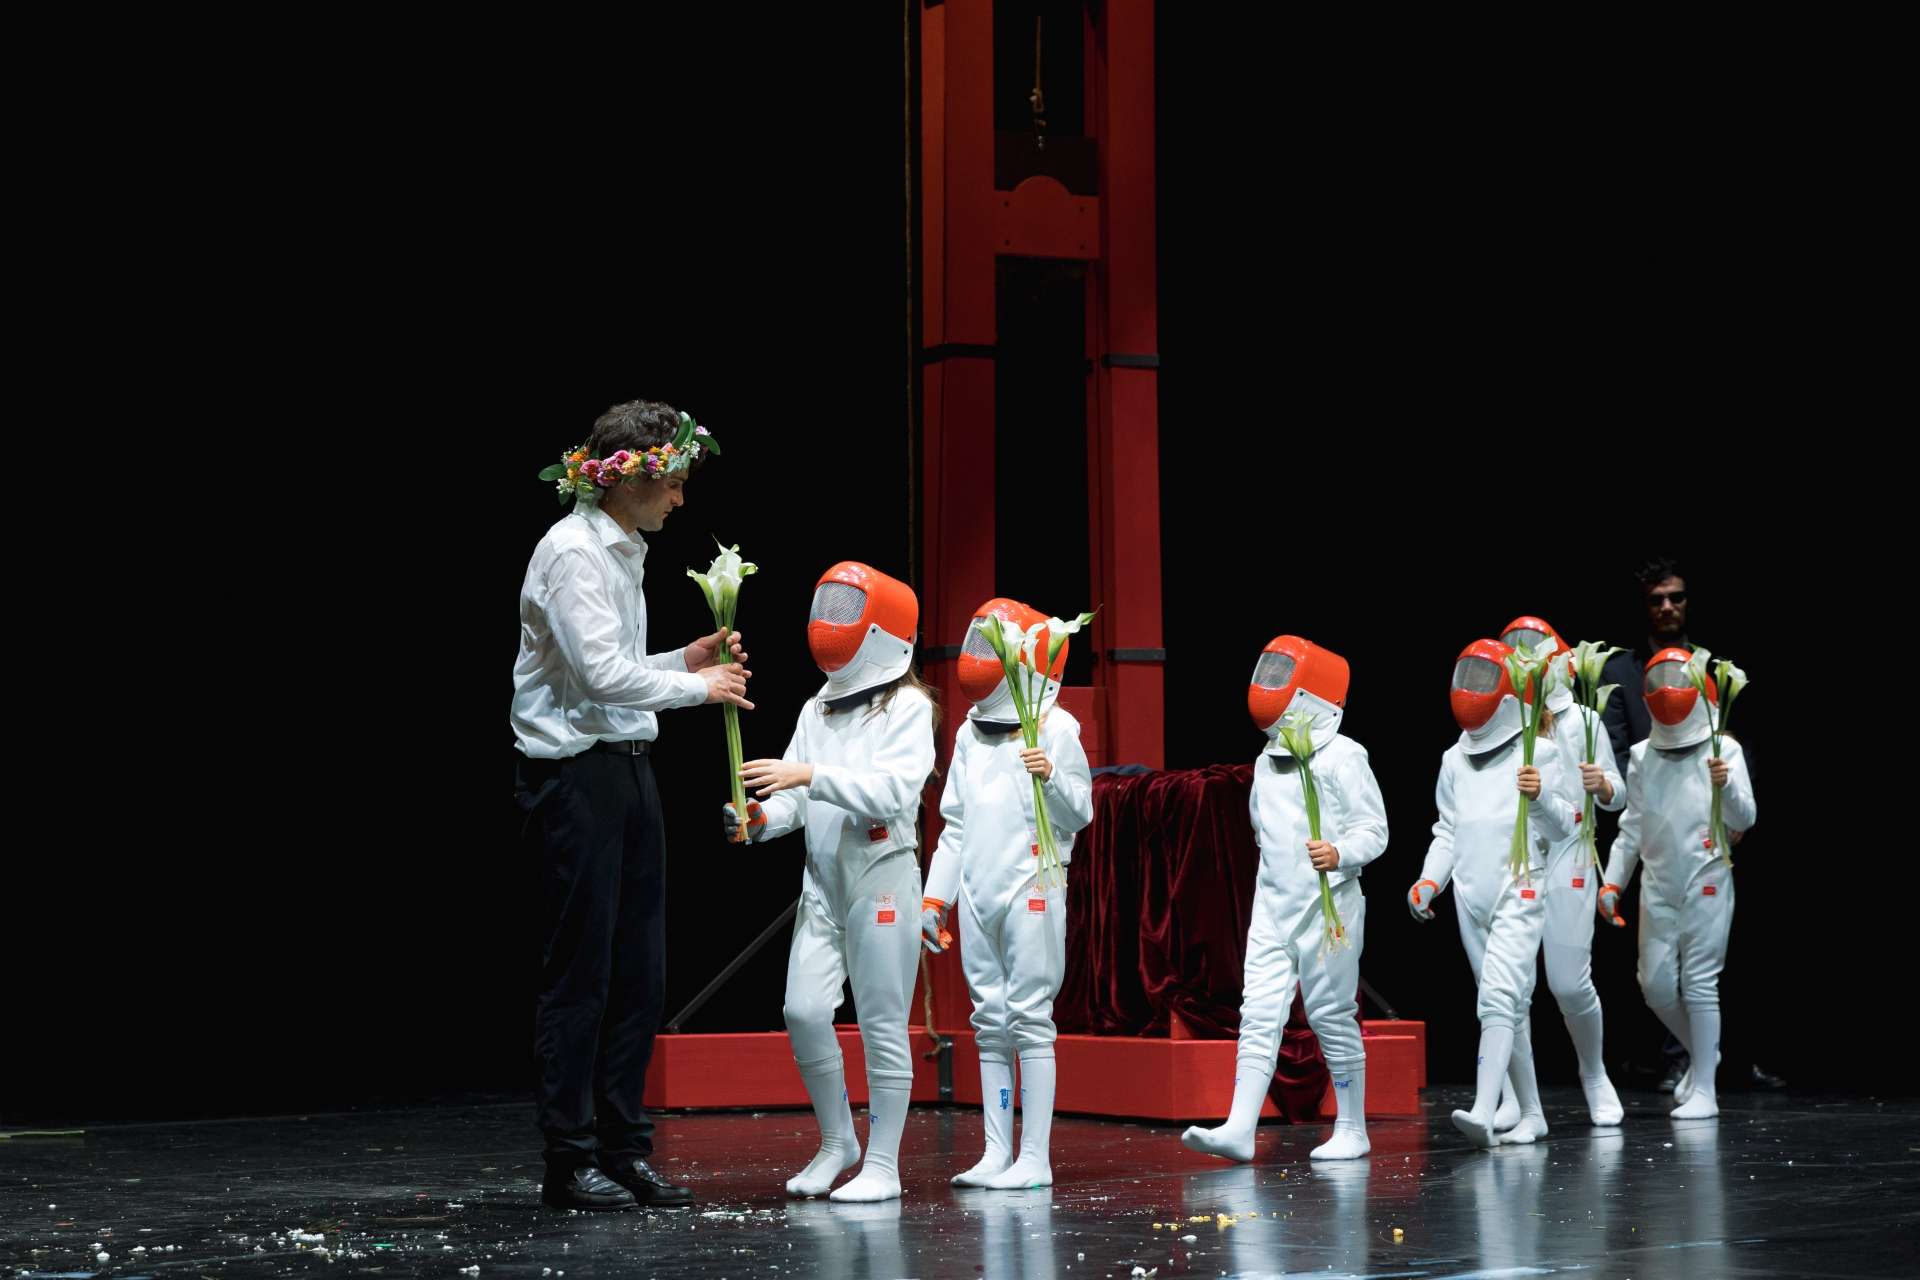 Guillaume Costanza, interprète de la pièce Caridad, distribue des fleurs aux enfants